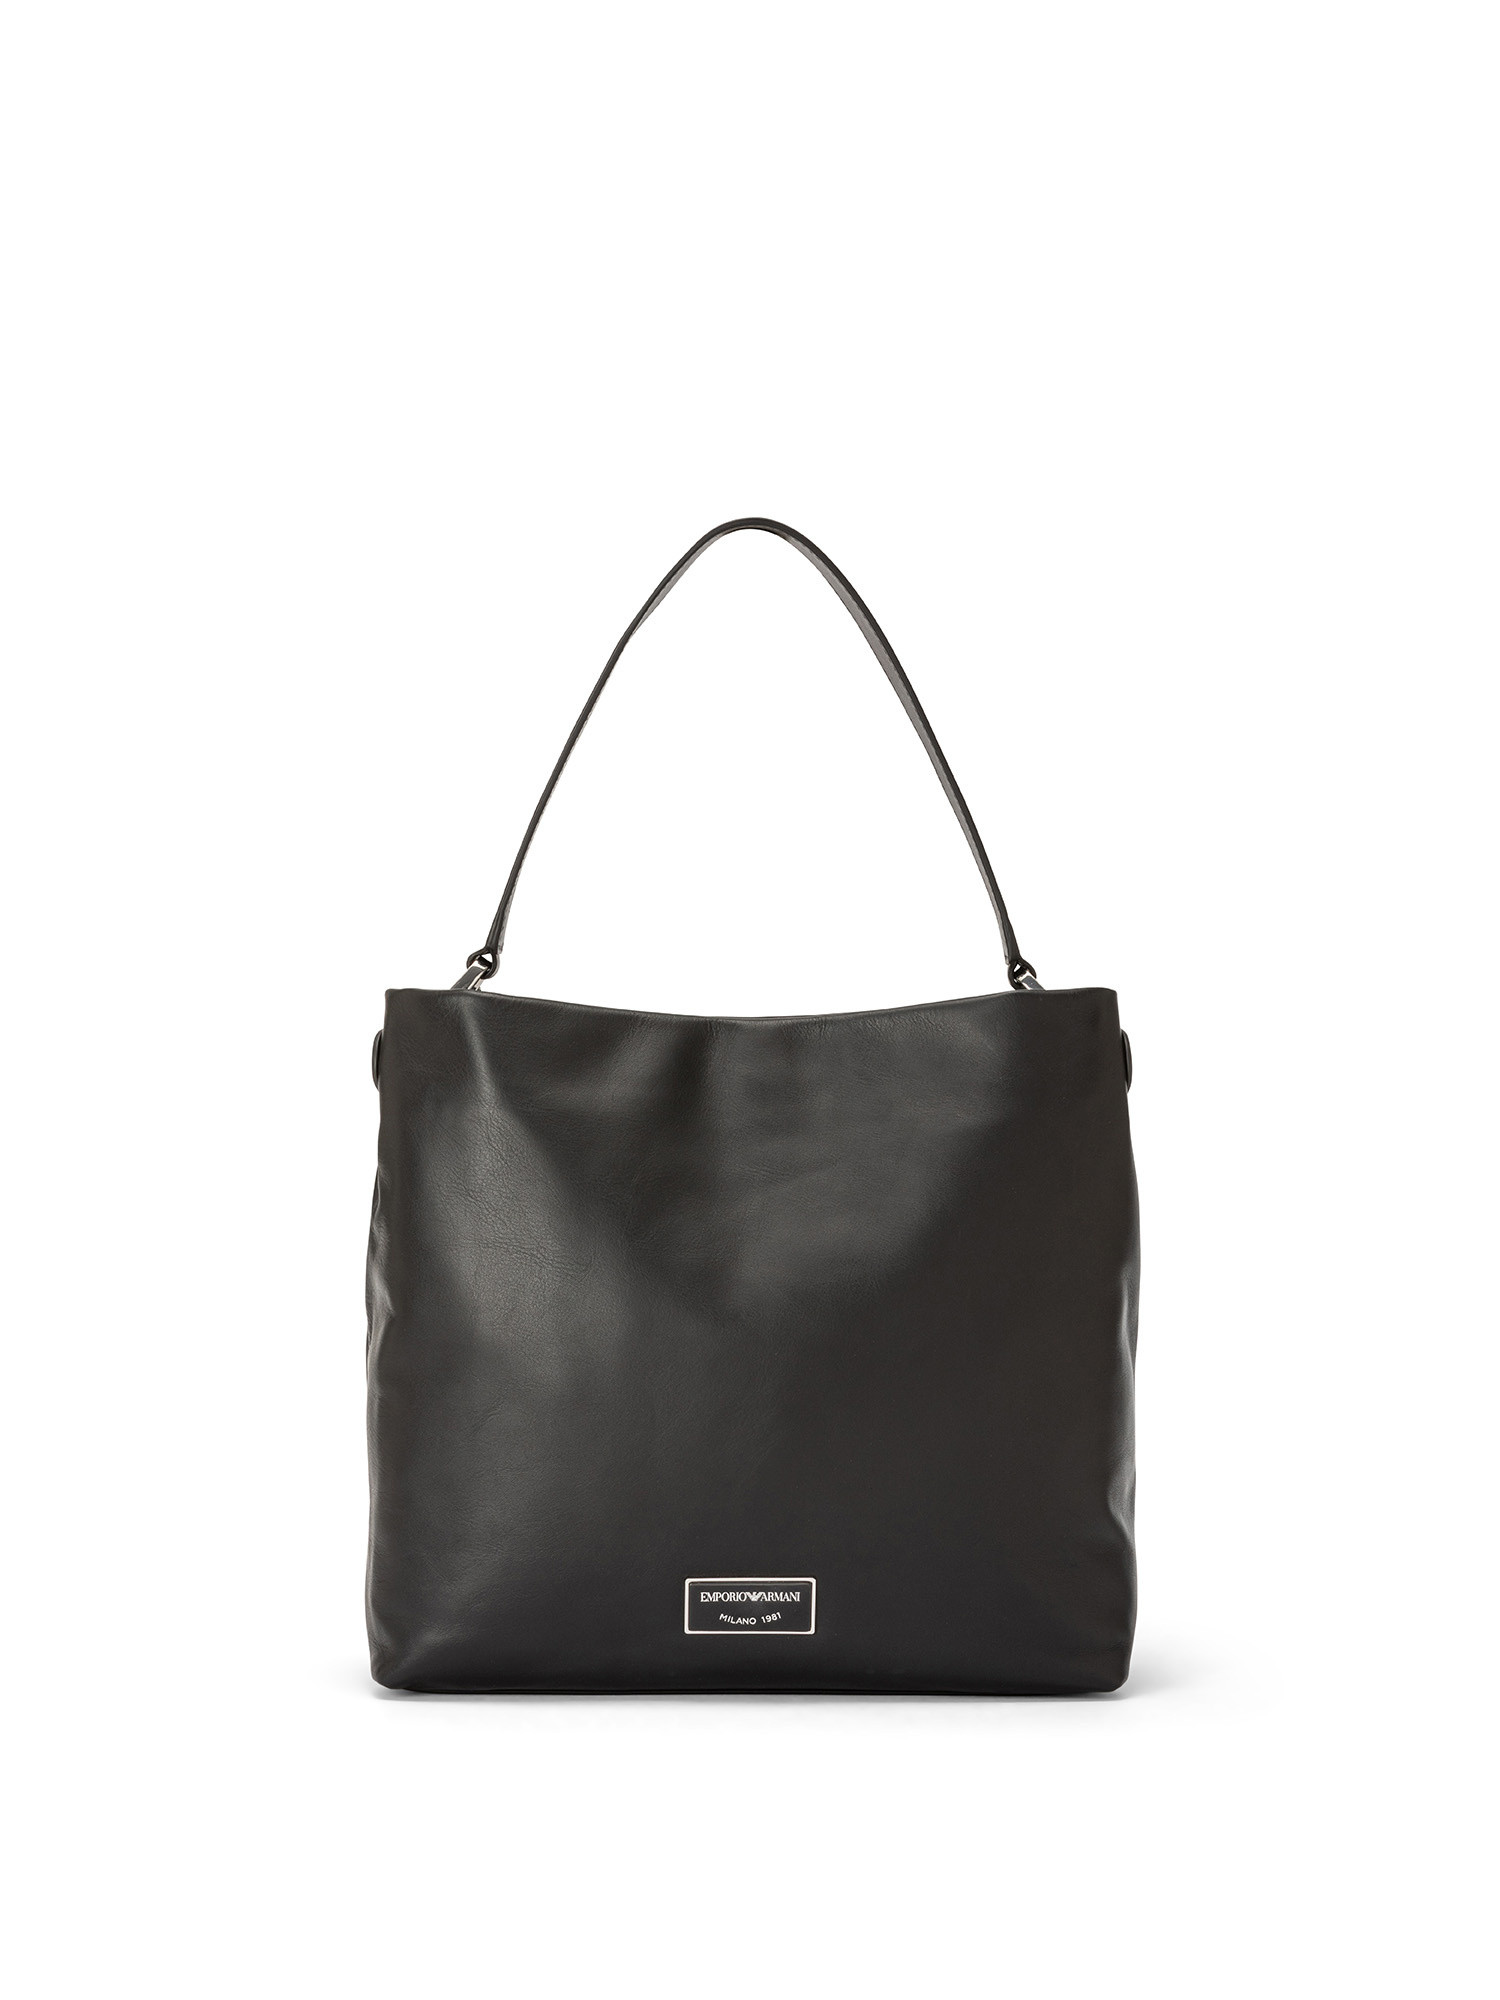 Emporio Armani - Leather shoulder bag with logo, Black, large image number 0